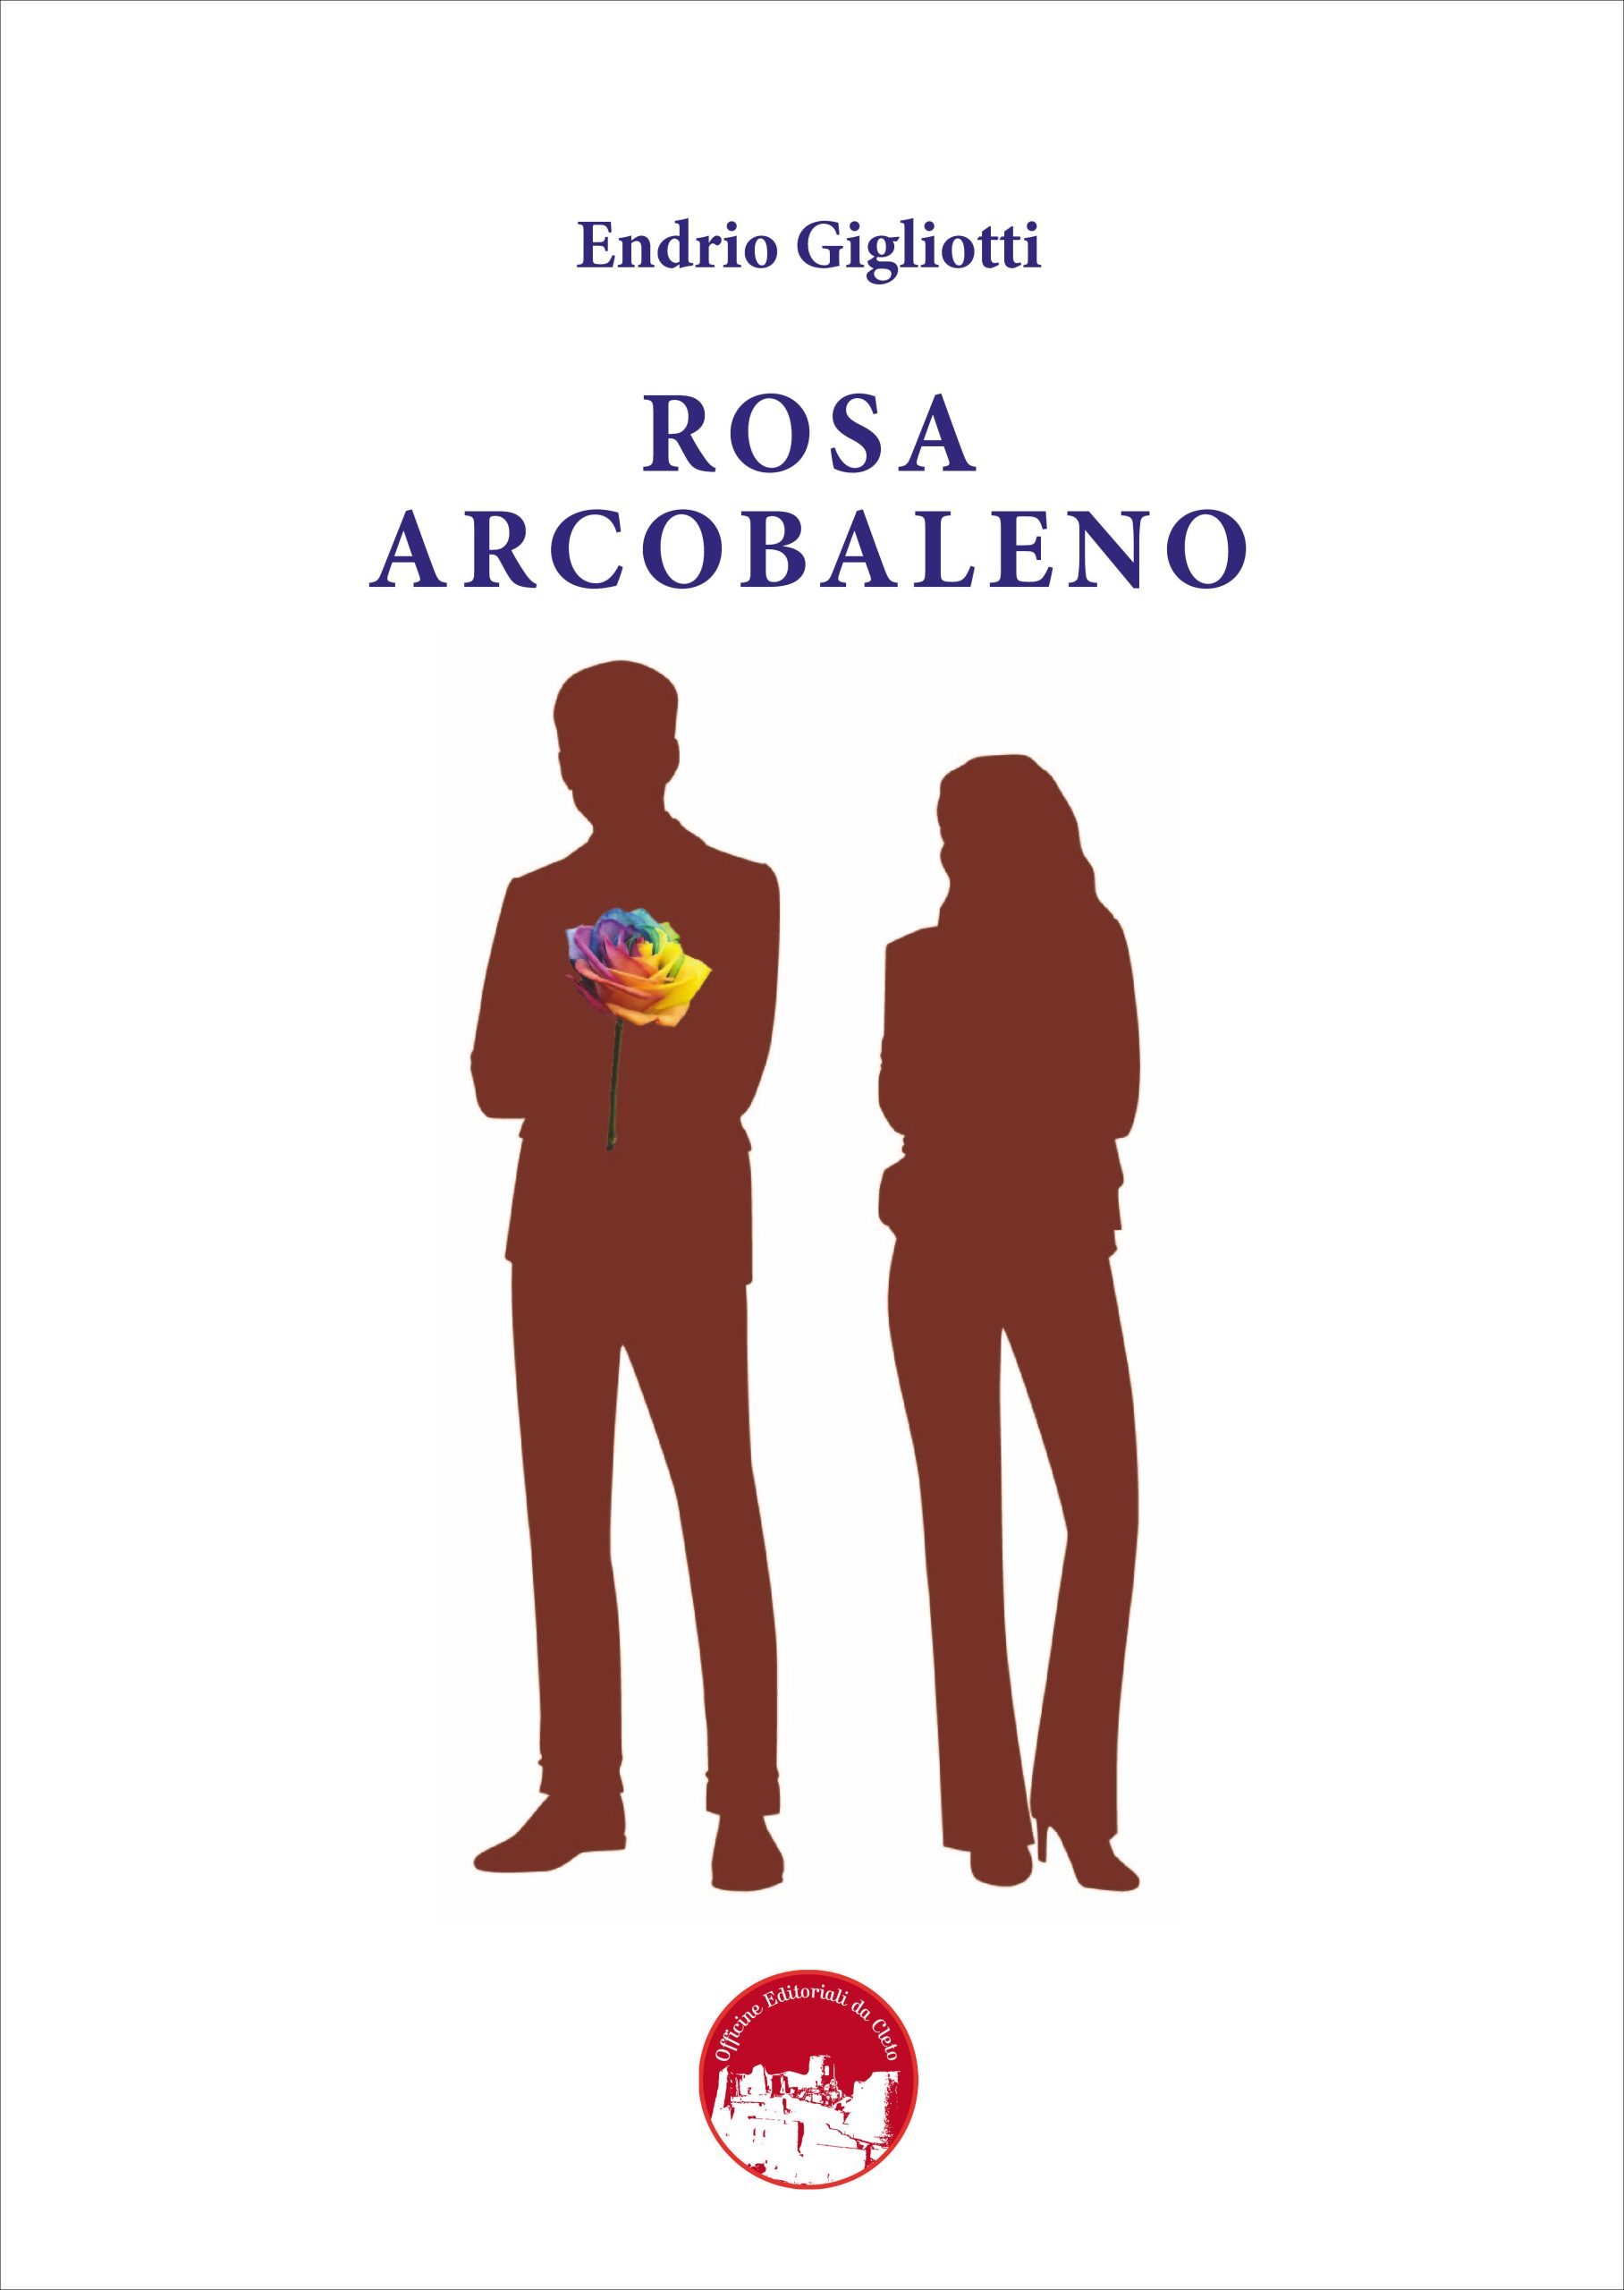 La copertina del libro di Endrio Gigliotti dal titolo Rosa arcobaleno